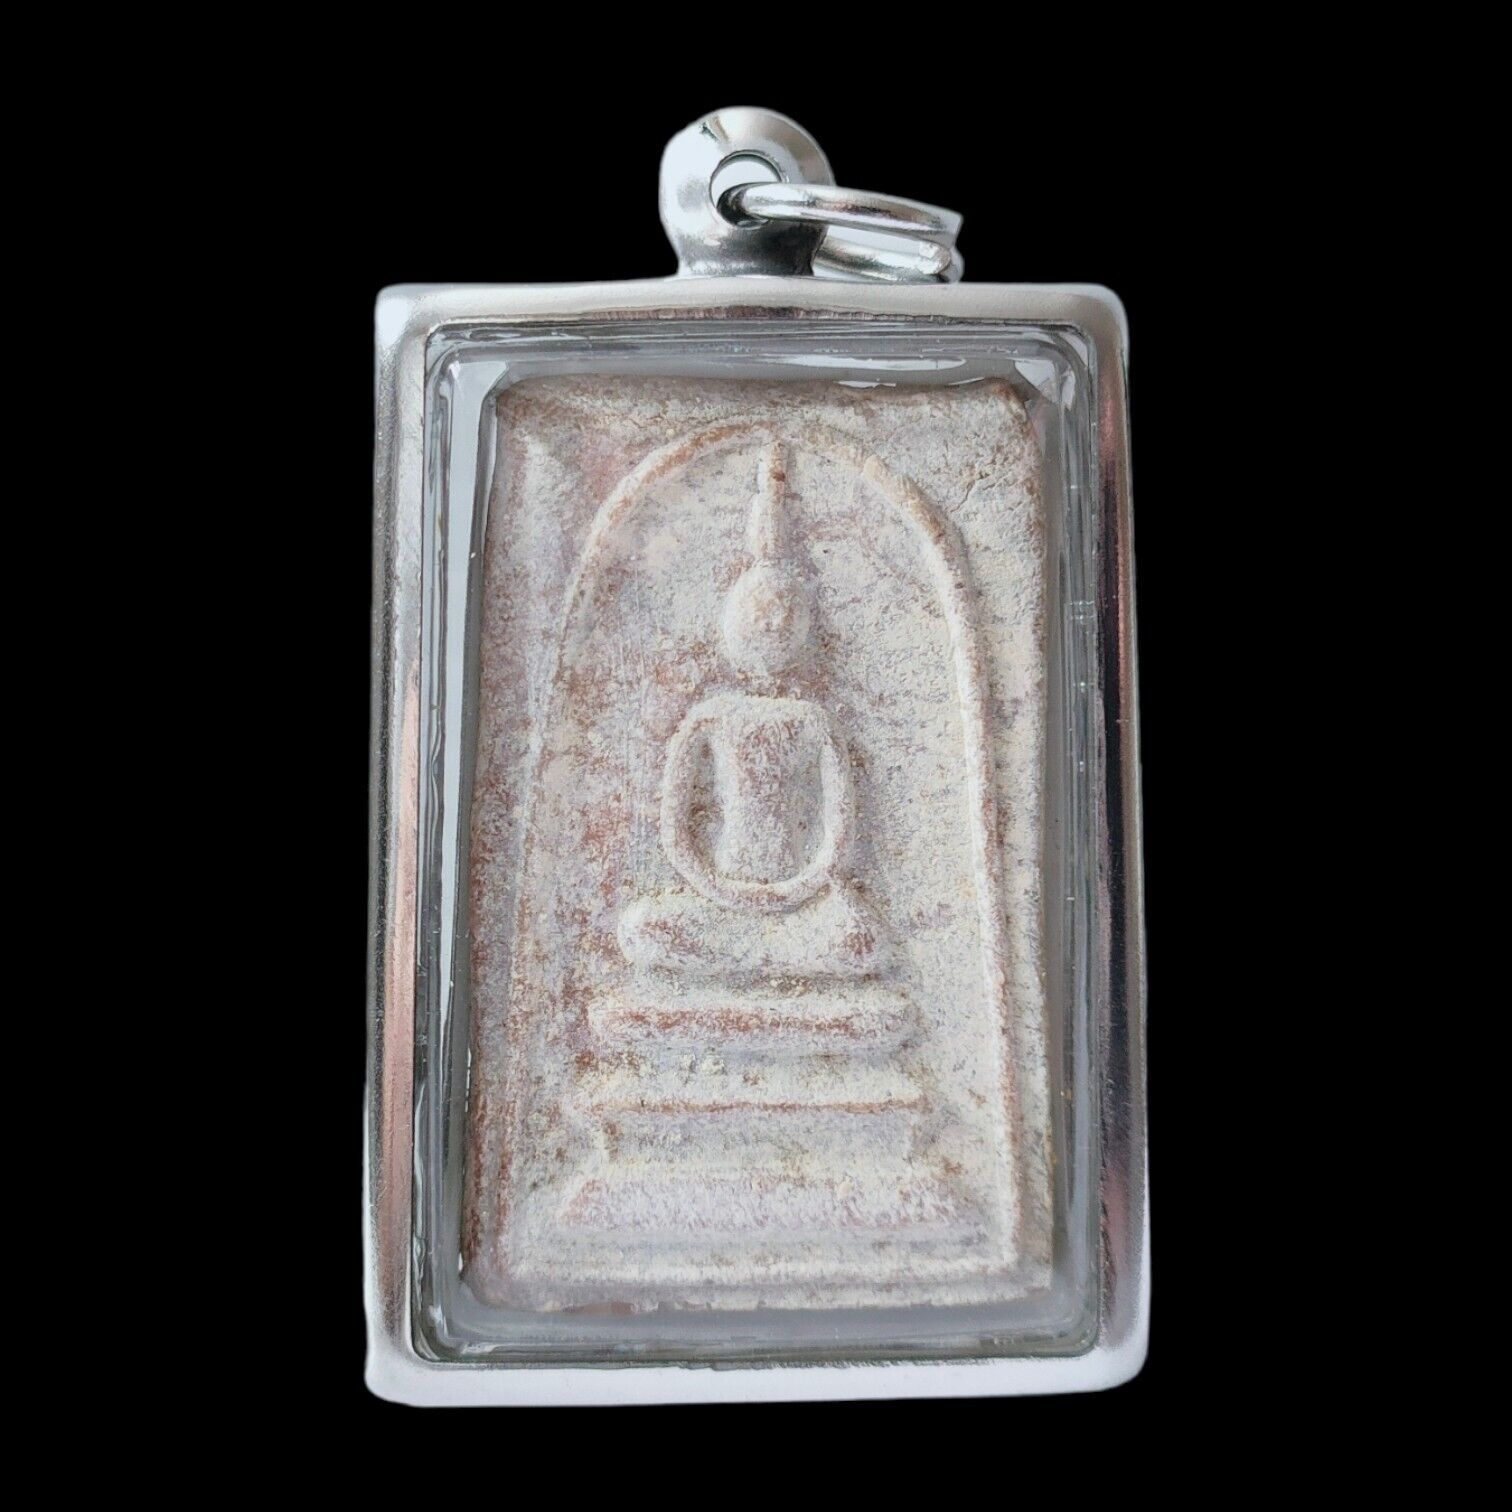 Lp Pae Lp Toh Phra Somdej  Yant Tri Ni  Sing Thai Buddha Amulet Pendant 2512 NEW